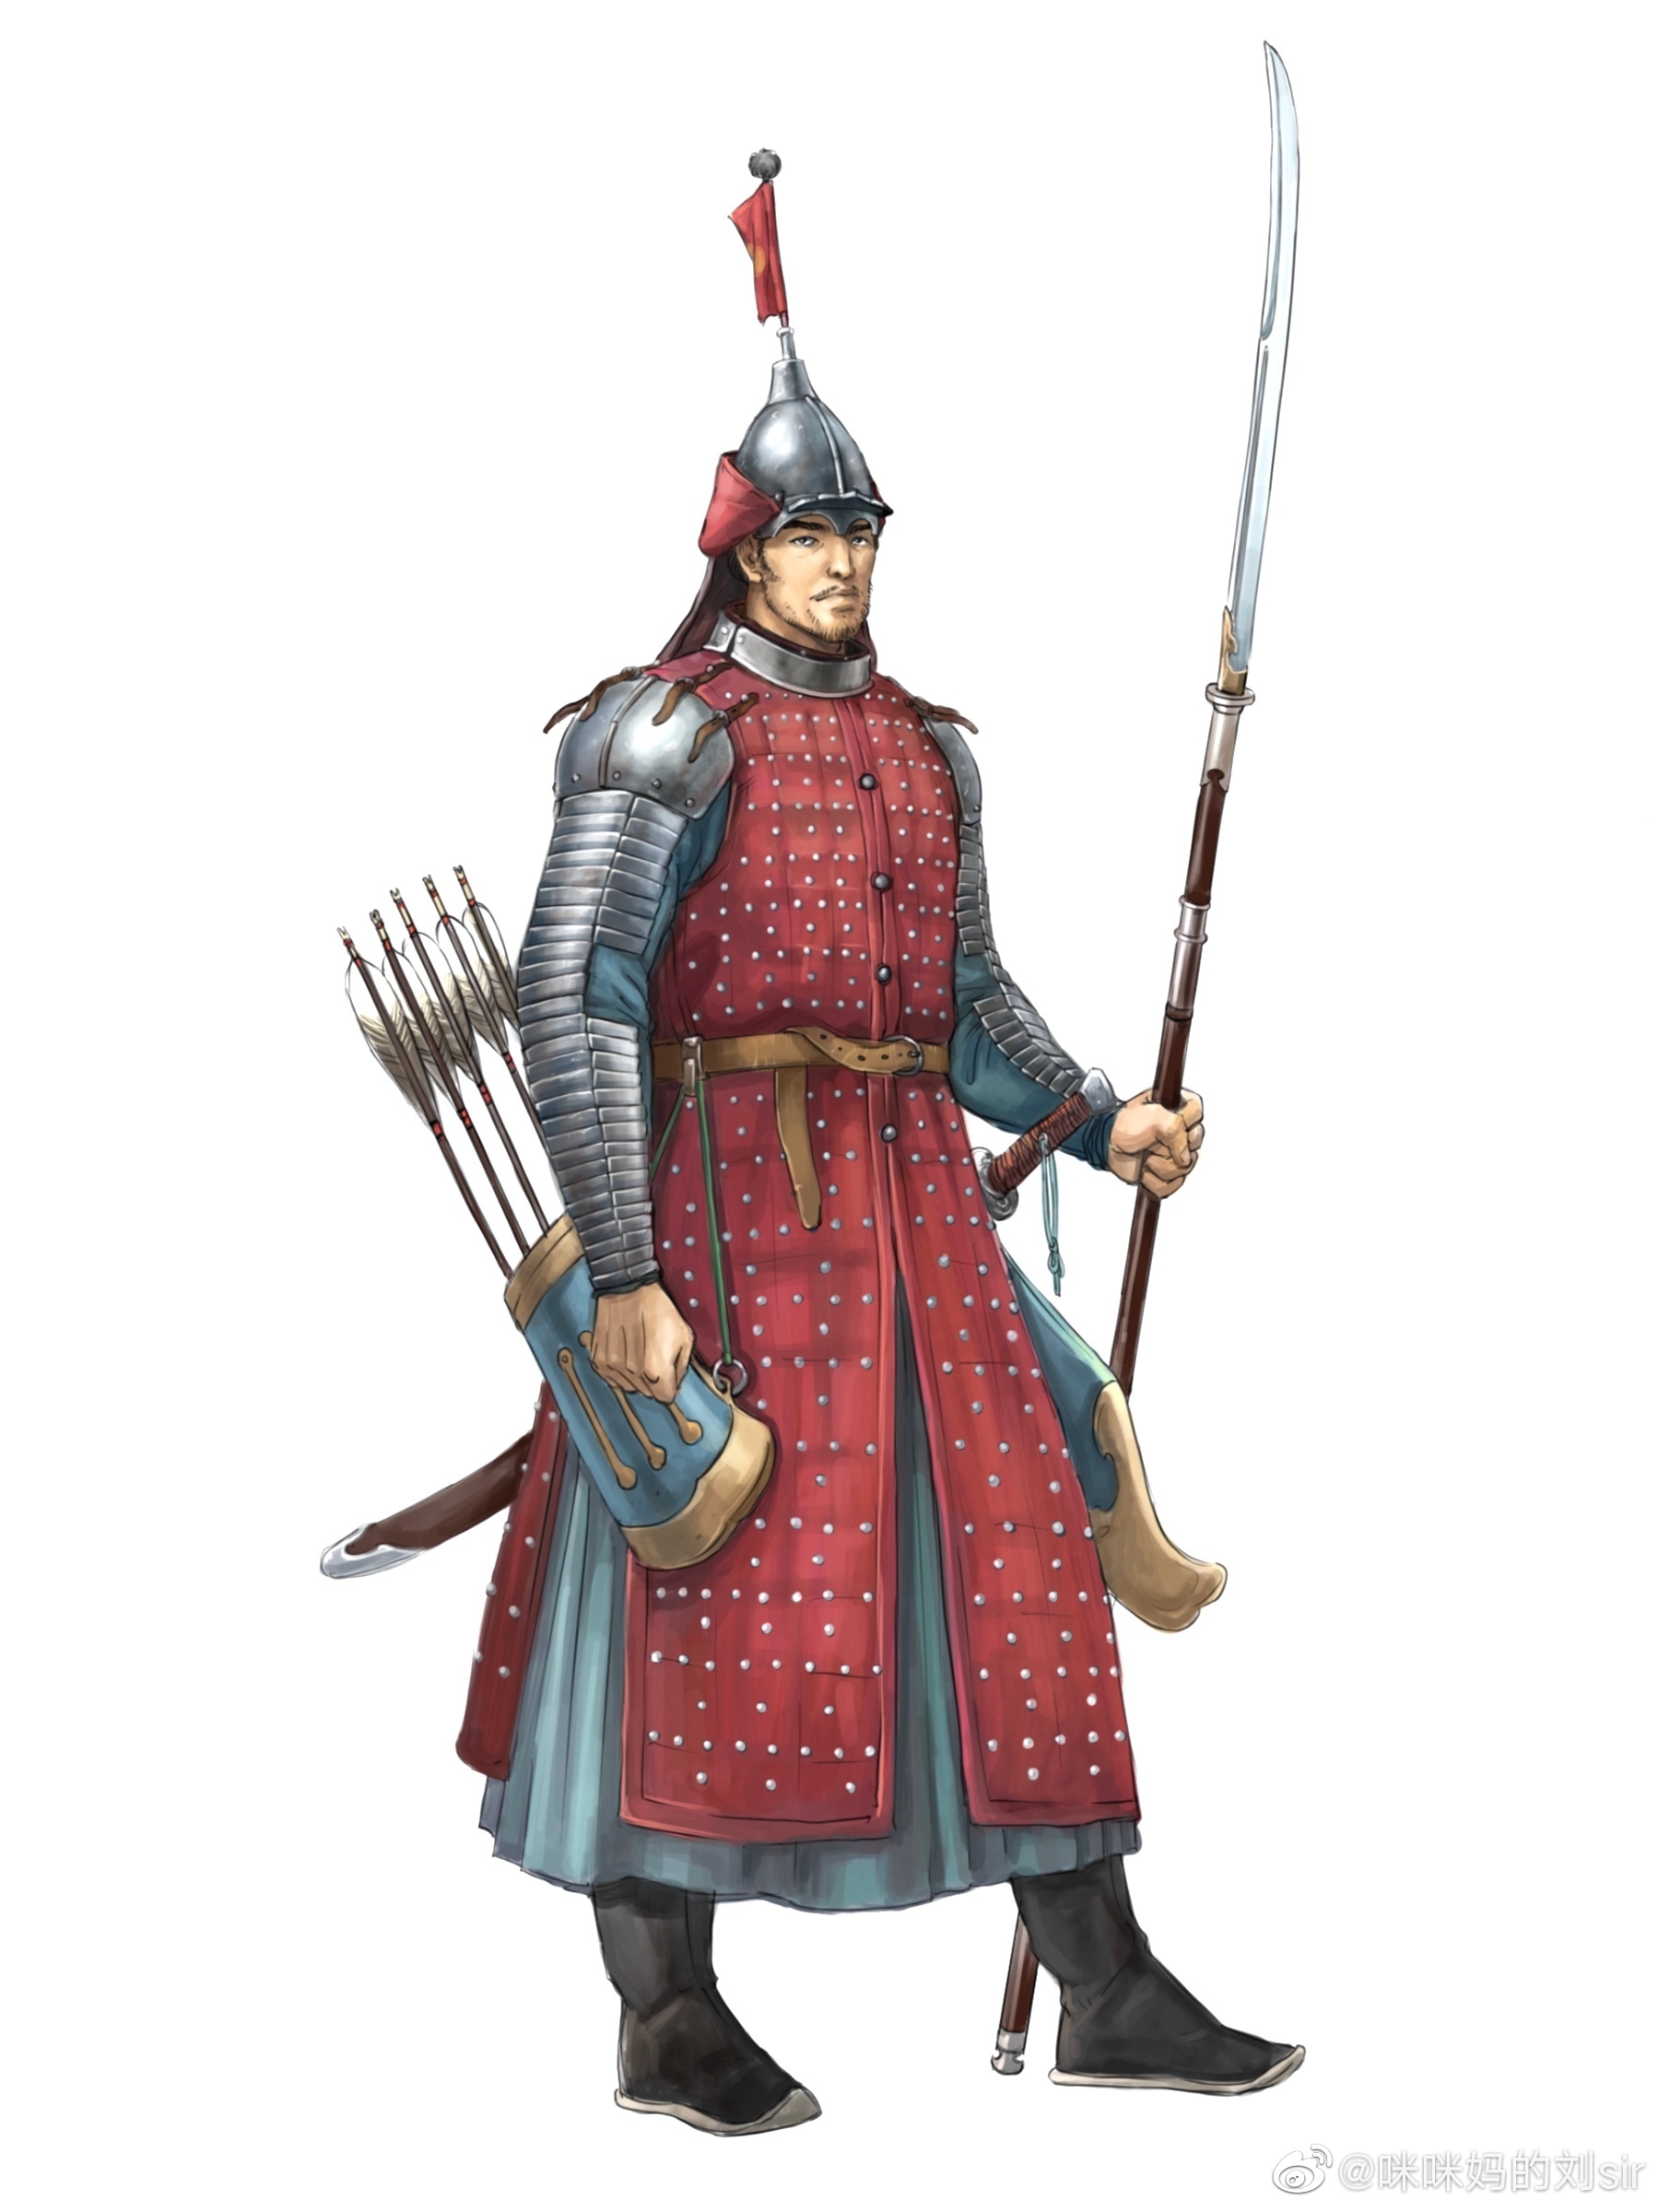 明代開始大規模流行的布面鐵甲成為了中國歷史最後一種普及的甲冑形式，兼顧防彈和抵禦刀劍的功能，其結構和西歐地區的板甲衣十分接近。（圖源：咪咪媽的劉Sir）